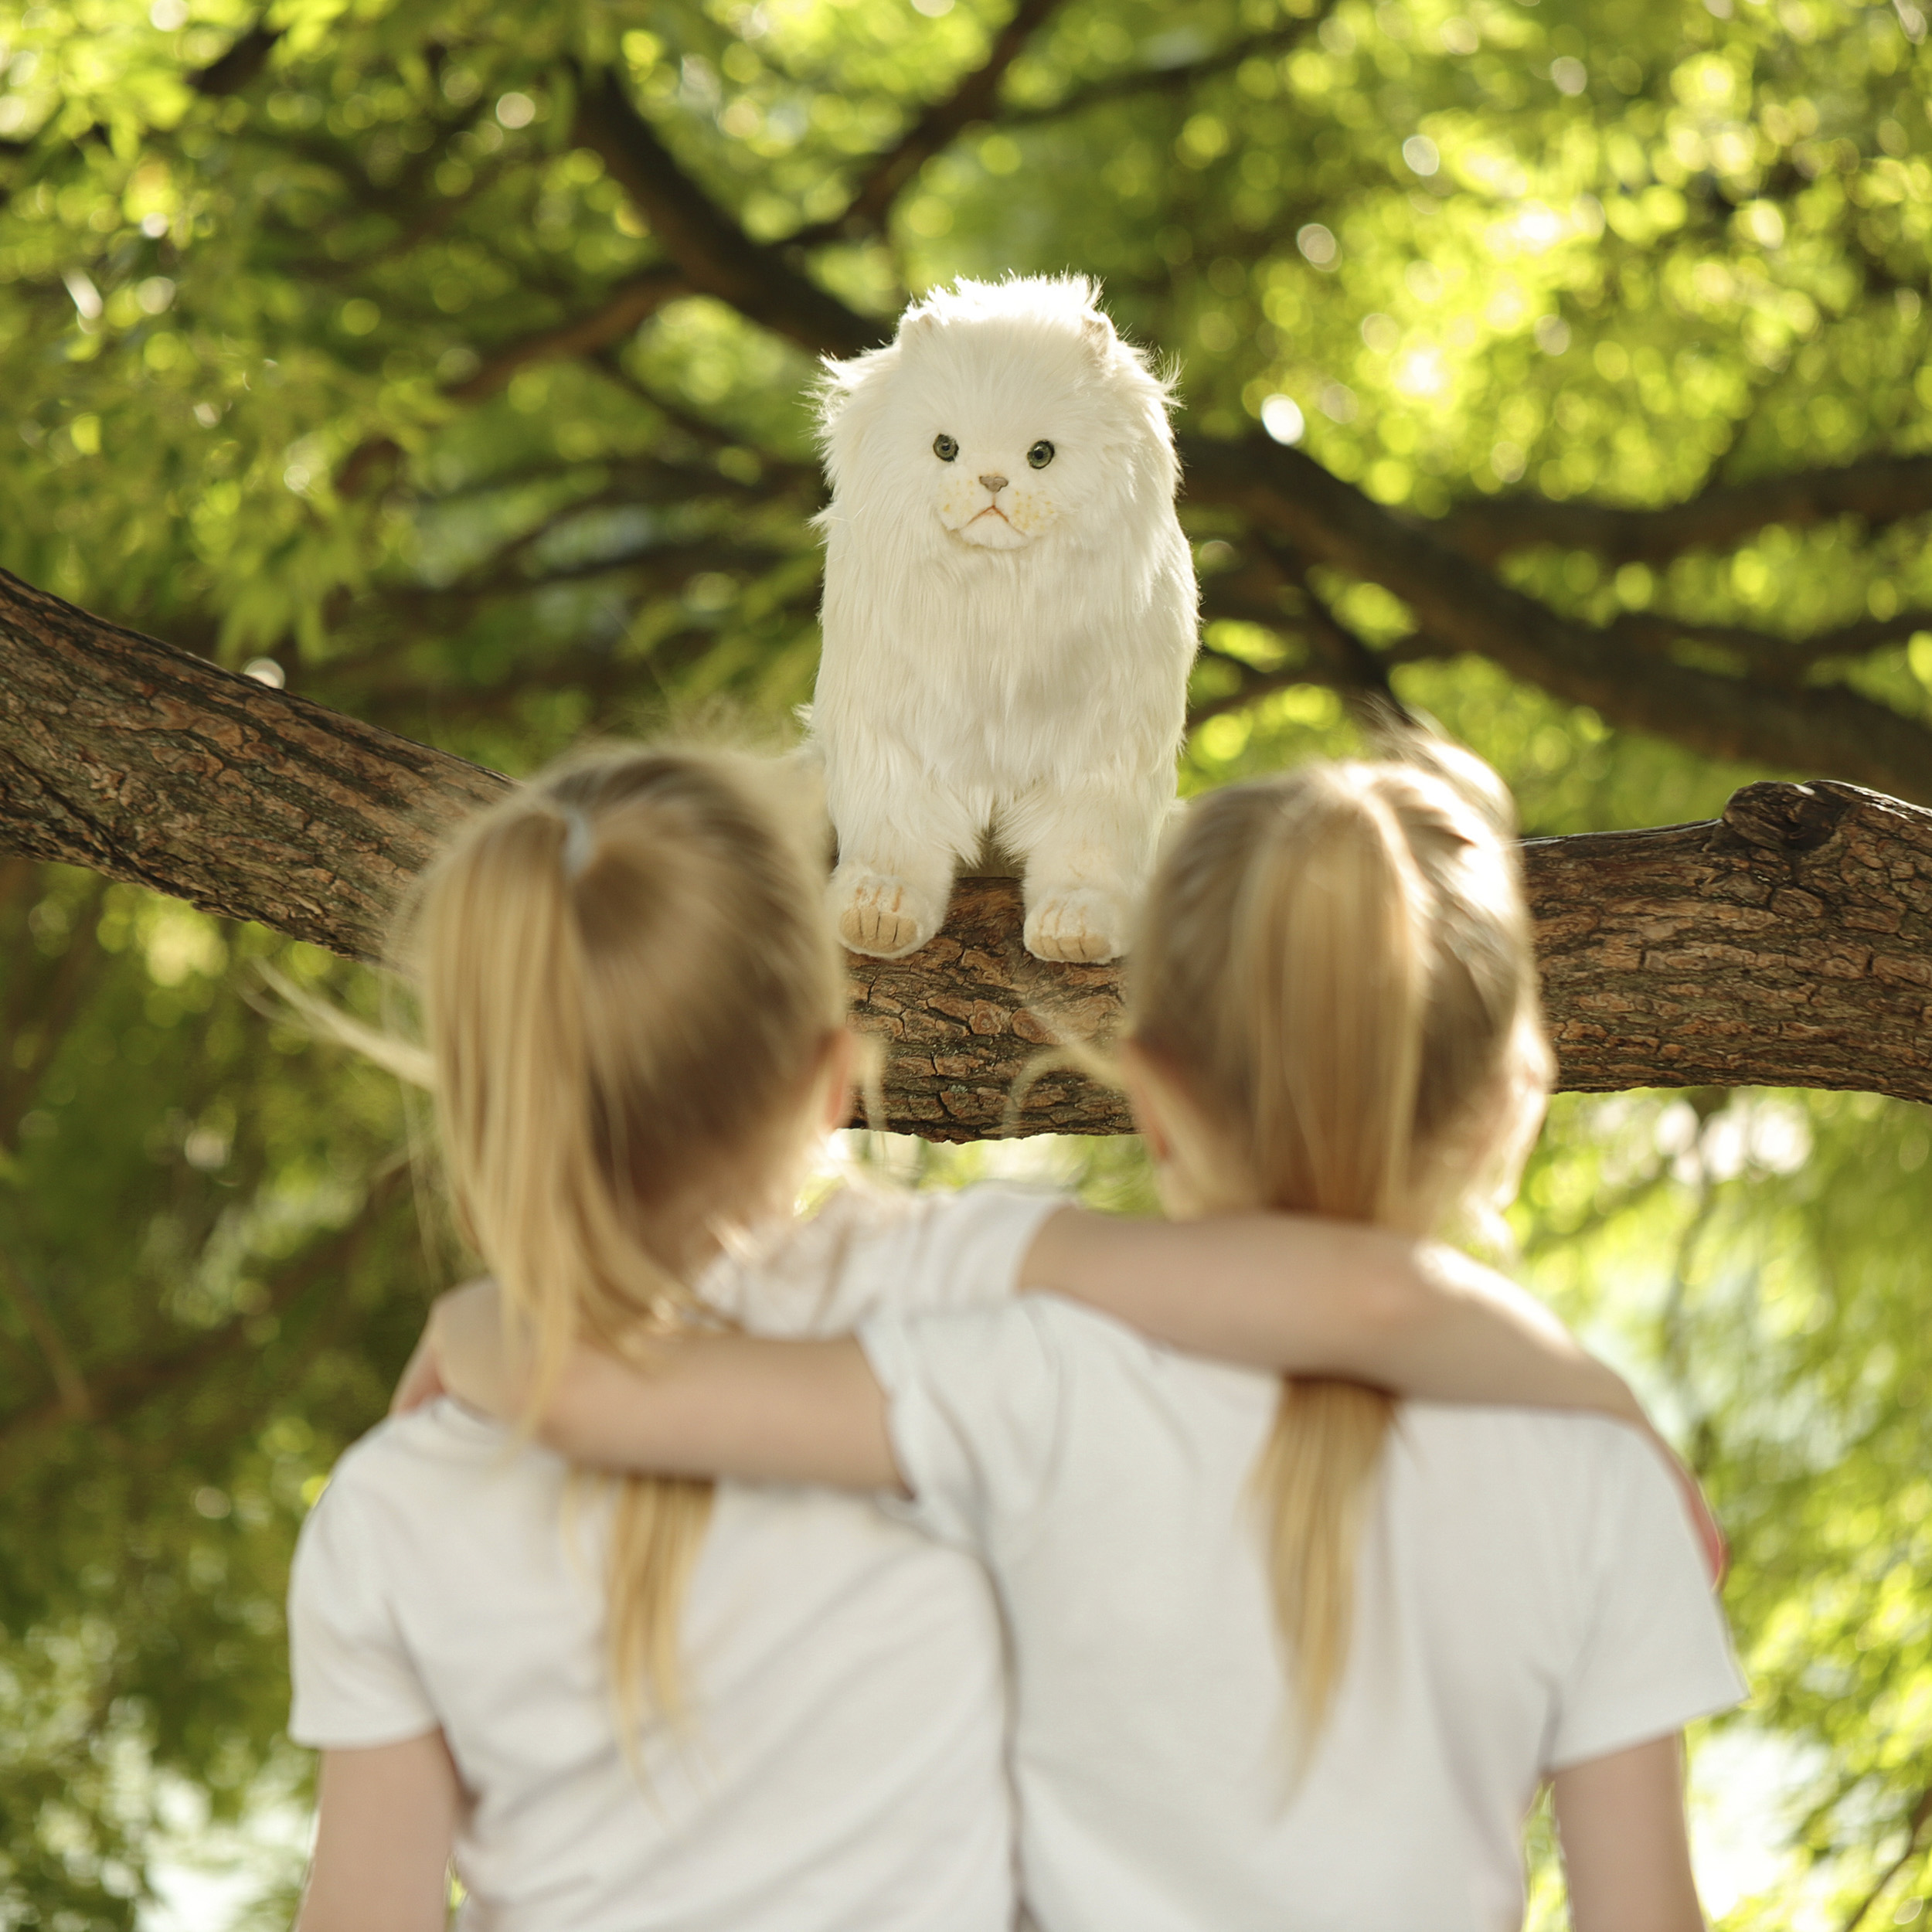 6431 кошка персидская, белая, 40 см